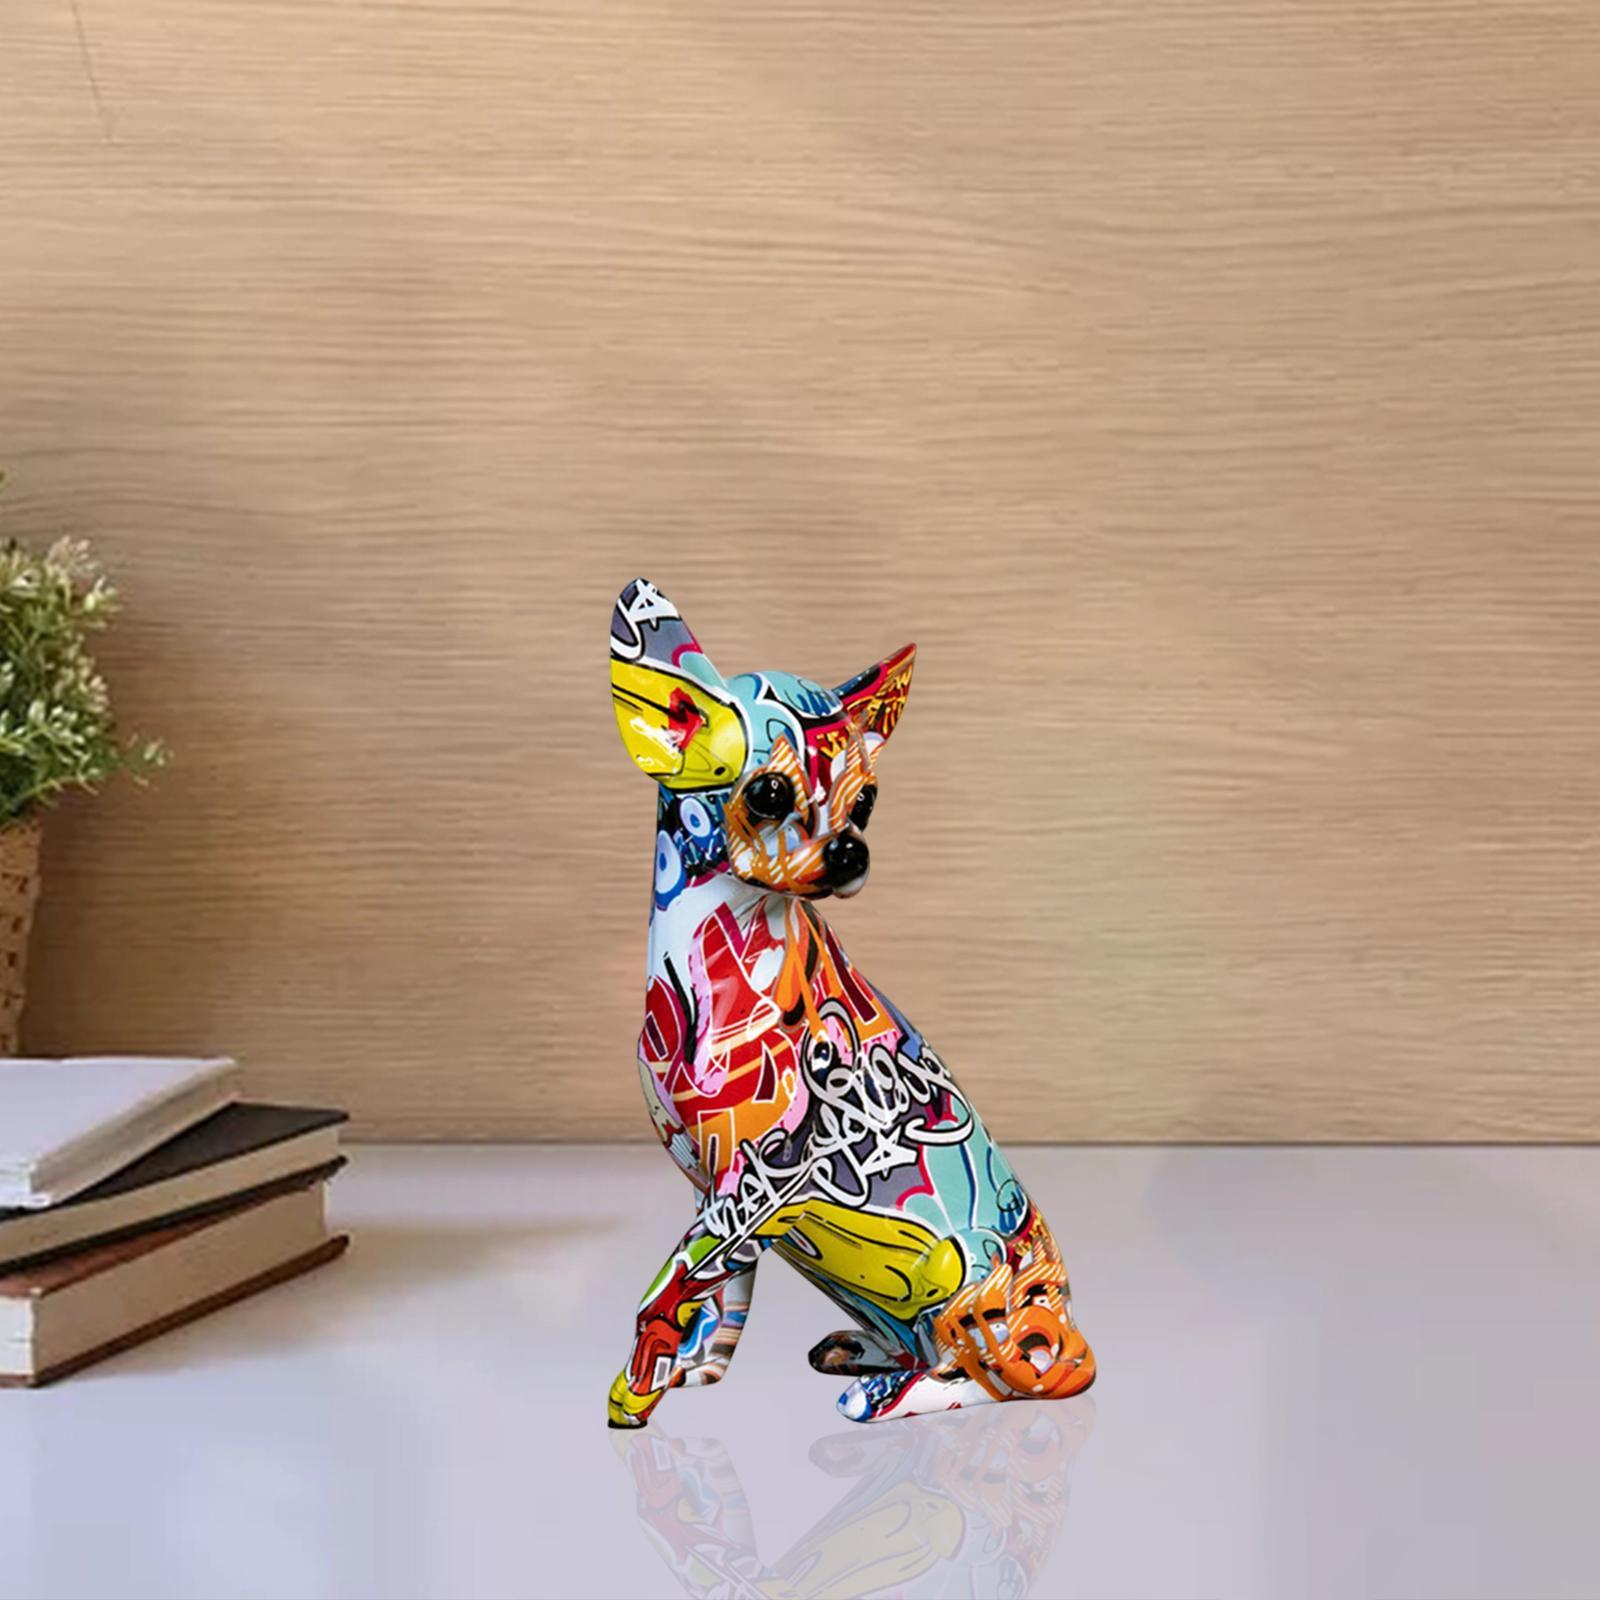 Resin Colorful Chihuahua Statue Graffiti Ornament Creative for Home Office  - Giá Tiki khuyến mãi: 557,000đ - Mua ngay! - Tư vấn mua sắm & tiêu dùng  trực tuyến Bigomart